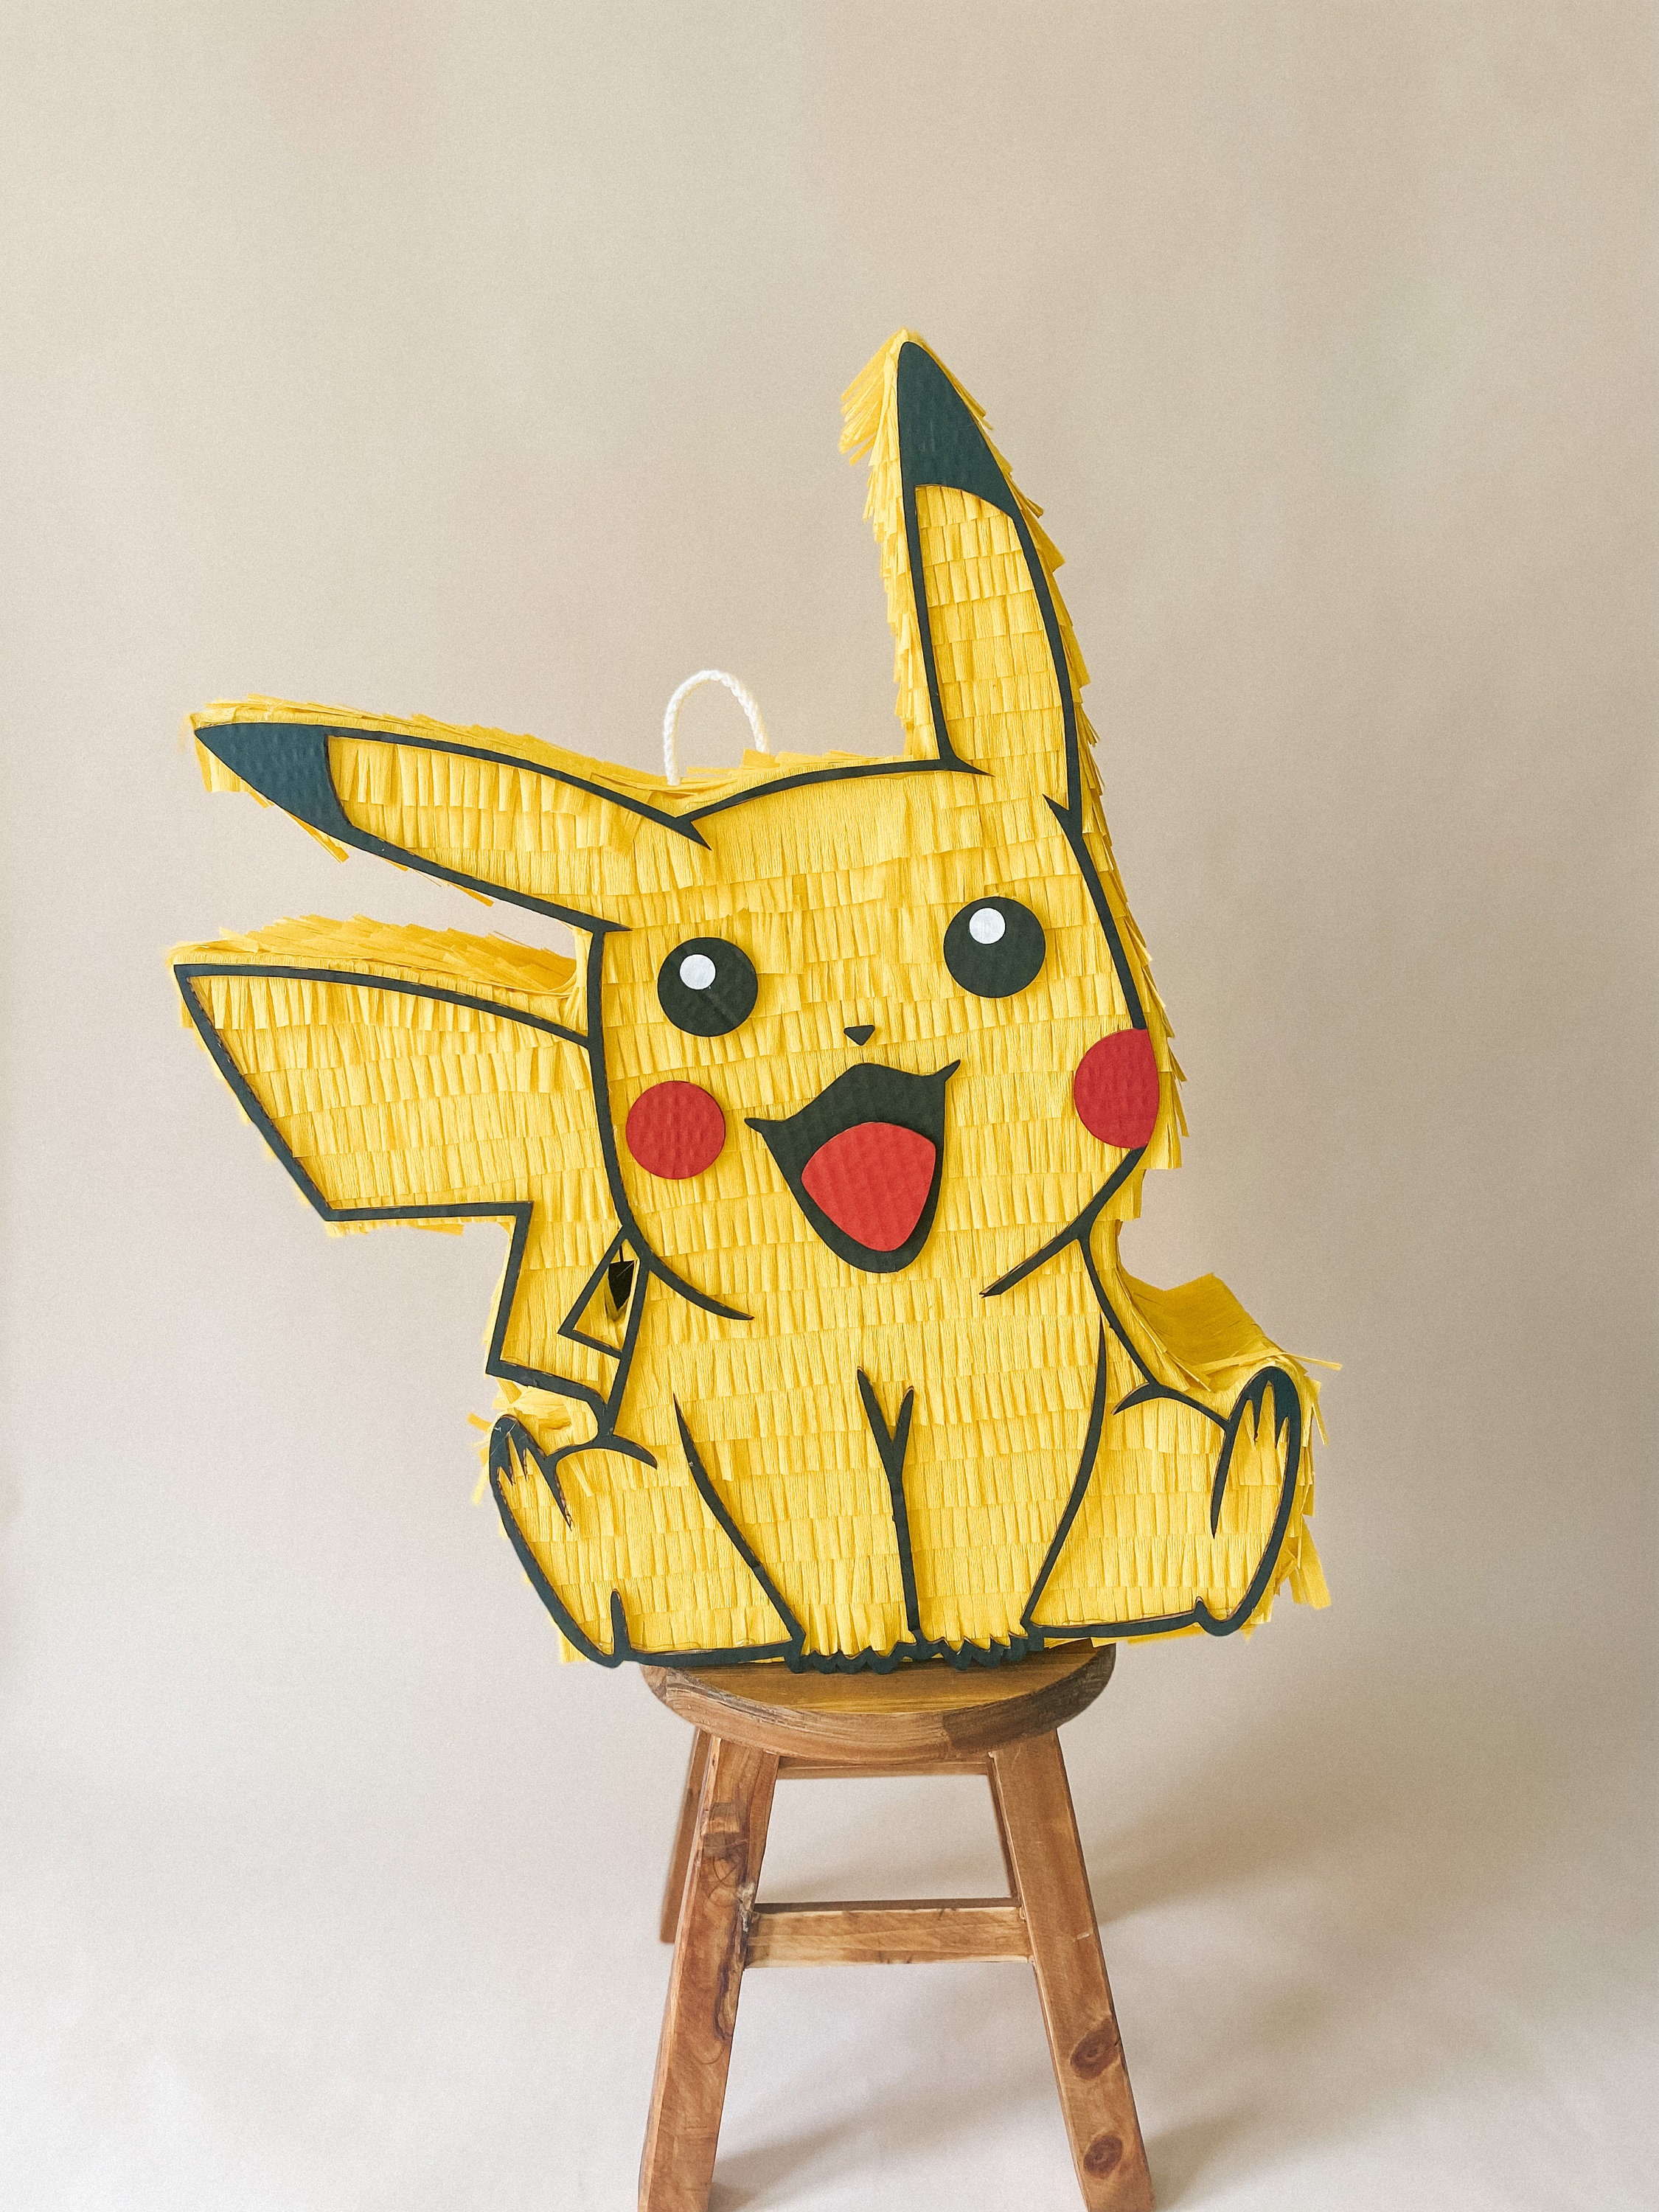 Piñata Pikachu Pokemón - Comprar en oh la piñata